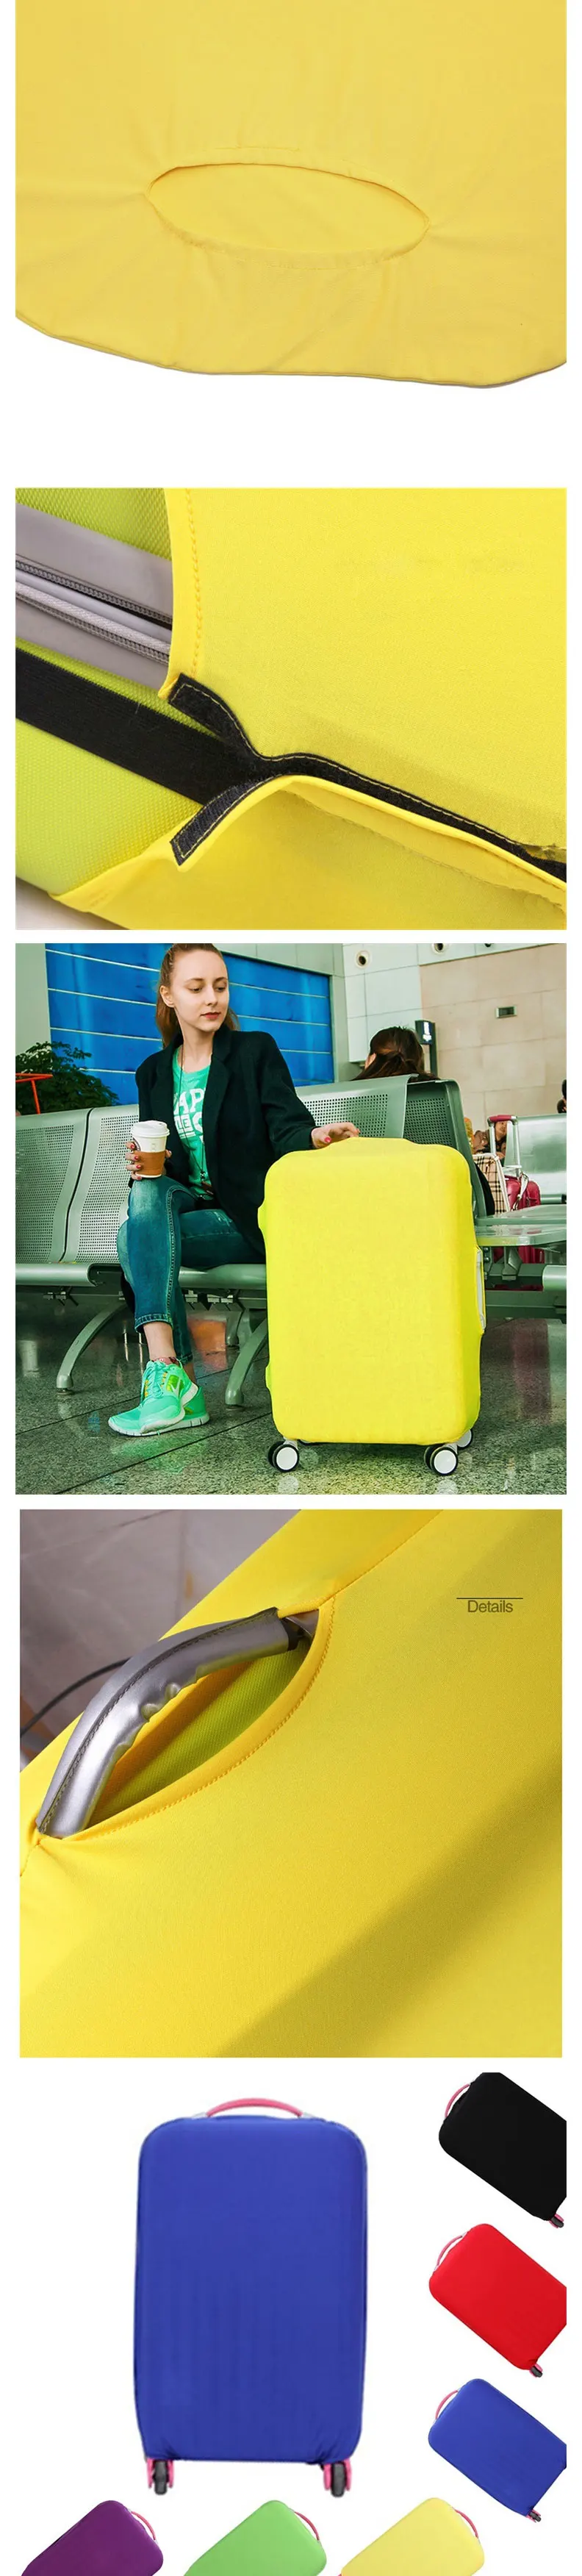 Эластичный тканевый защитный чехол для багажа от 18 до 30 дюймов, чехол на колесиках, чехол для костюма, пылезащитный чехол, аксессуары для путешествий, яркие цвета